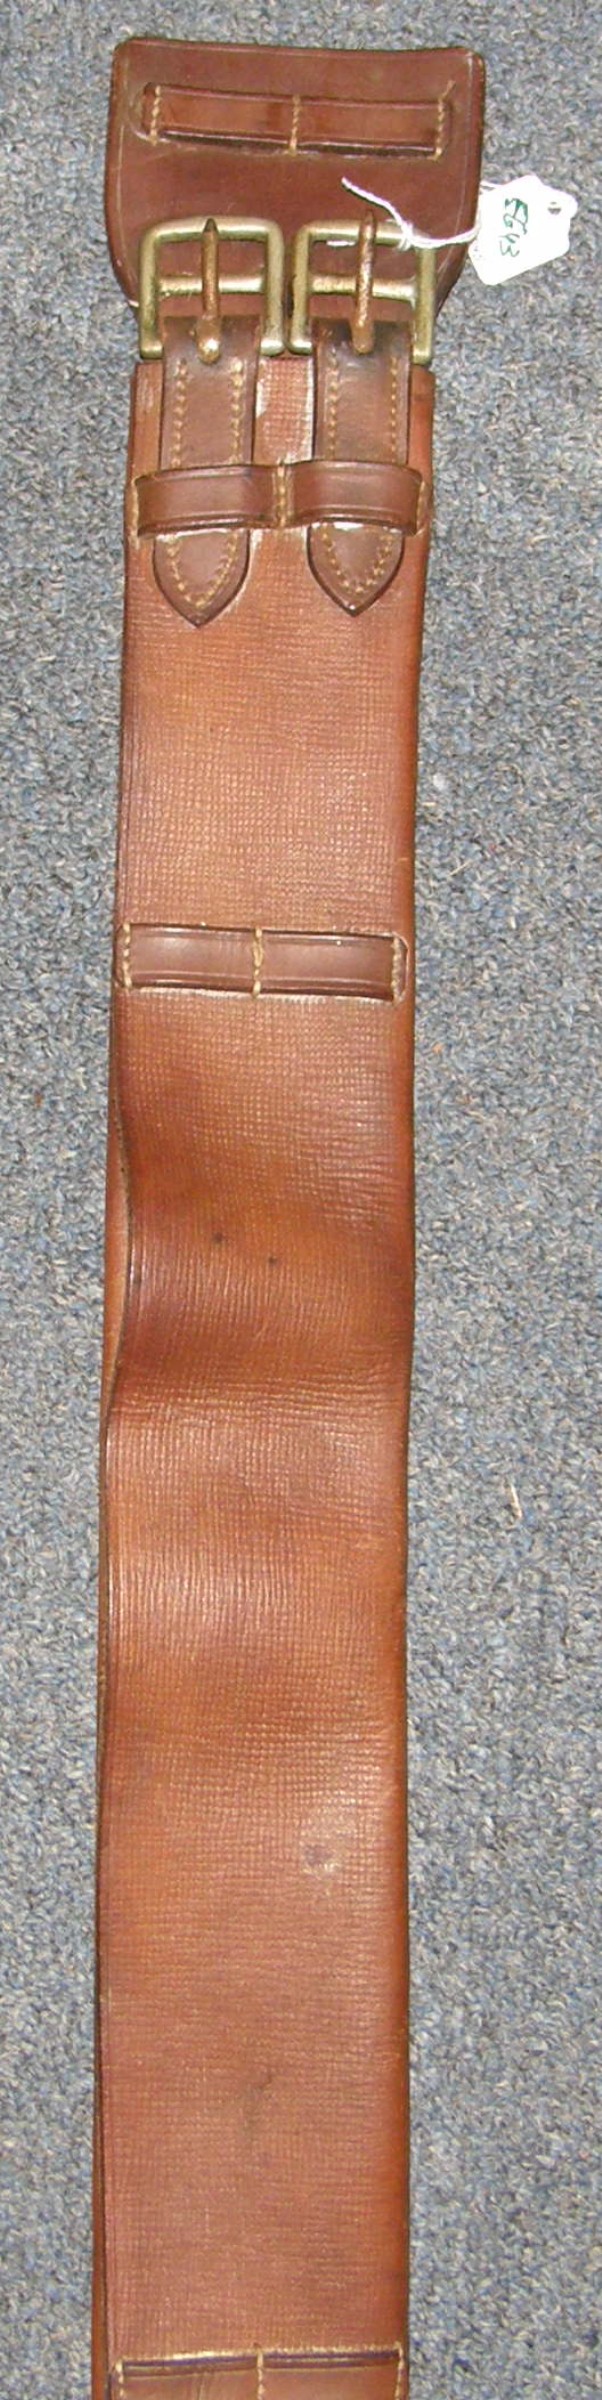 Crosby? 28" Folded Leather Dressage Girth Tri-Fold Leather English Girth Brown